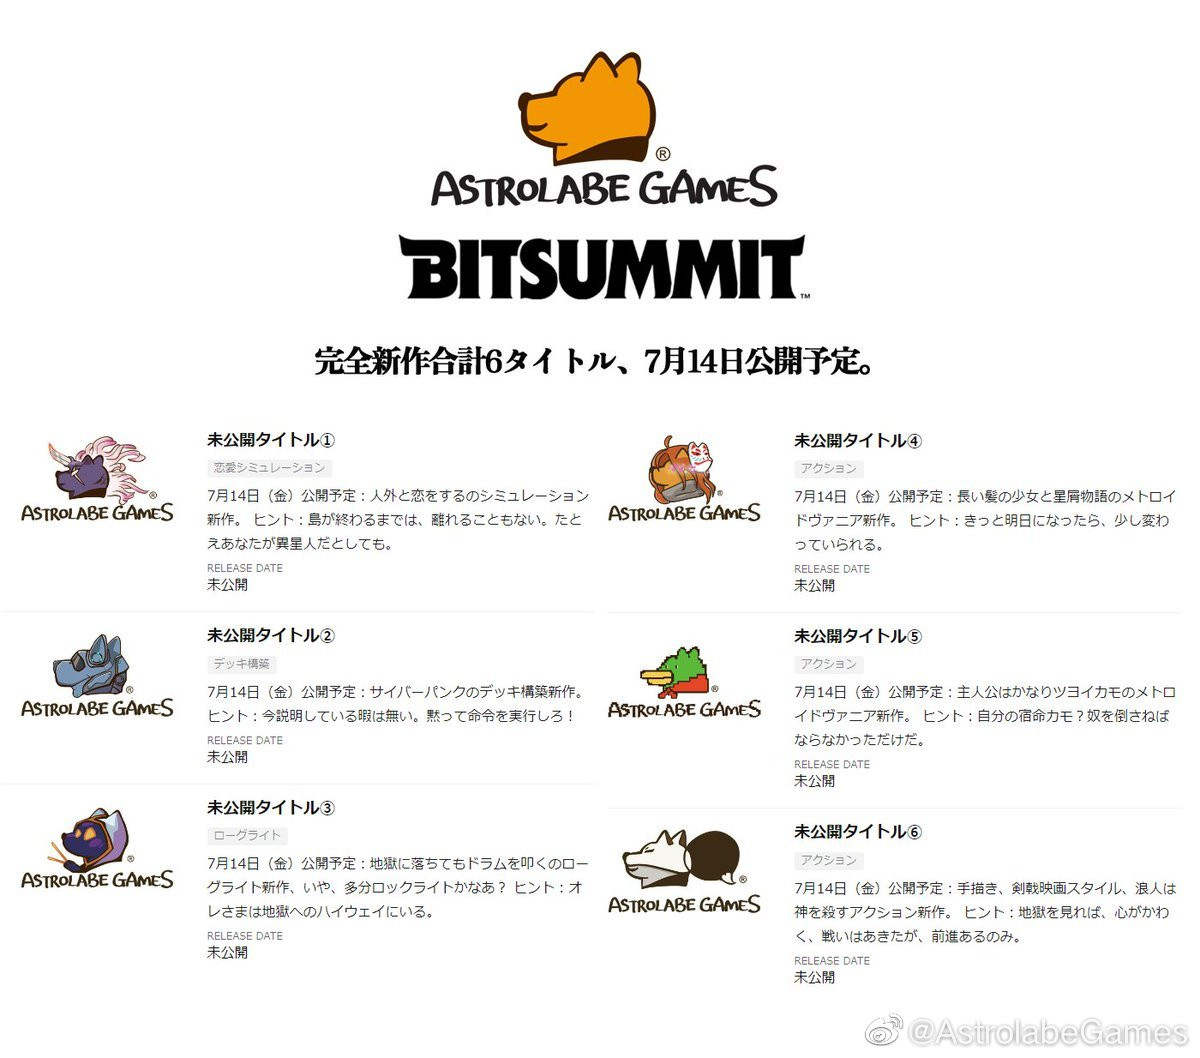 Astrolabe Games蓡加7月京都BitSummit 作爲金牌贊助商